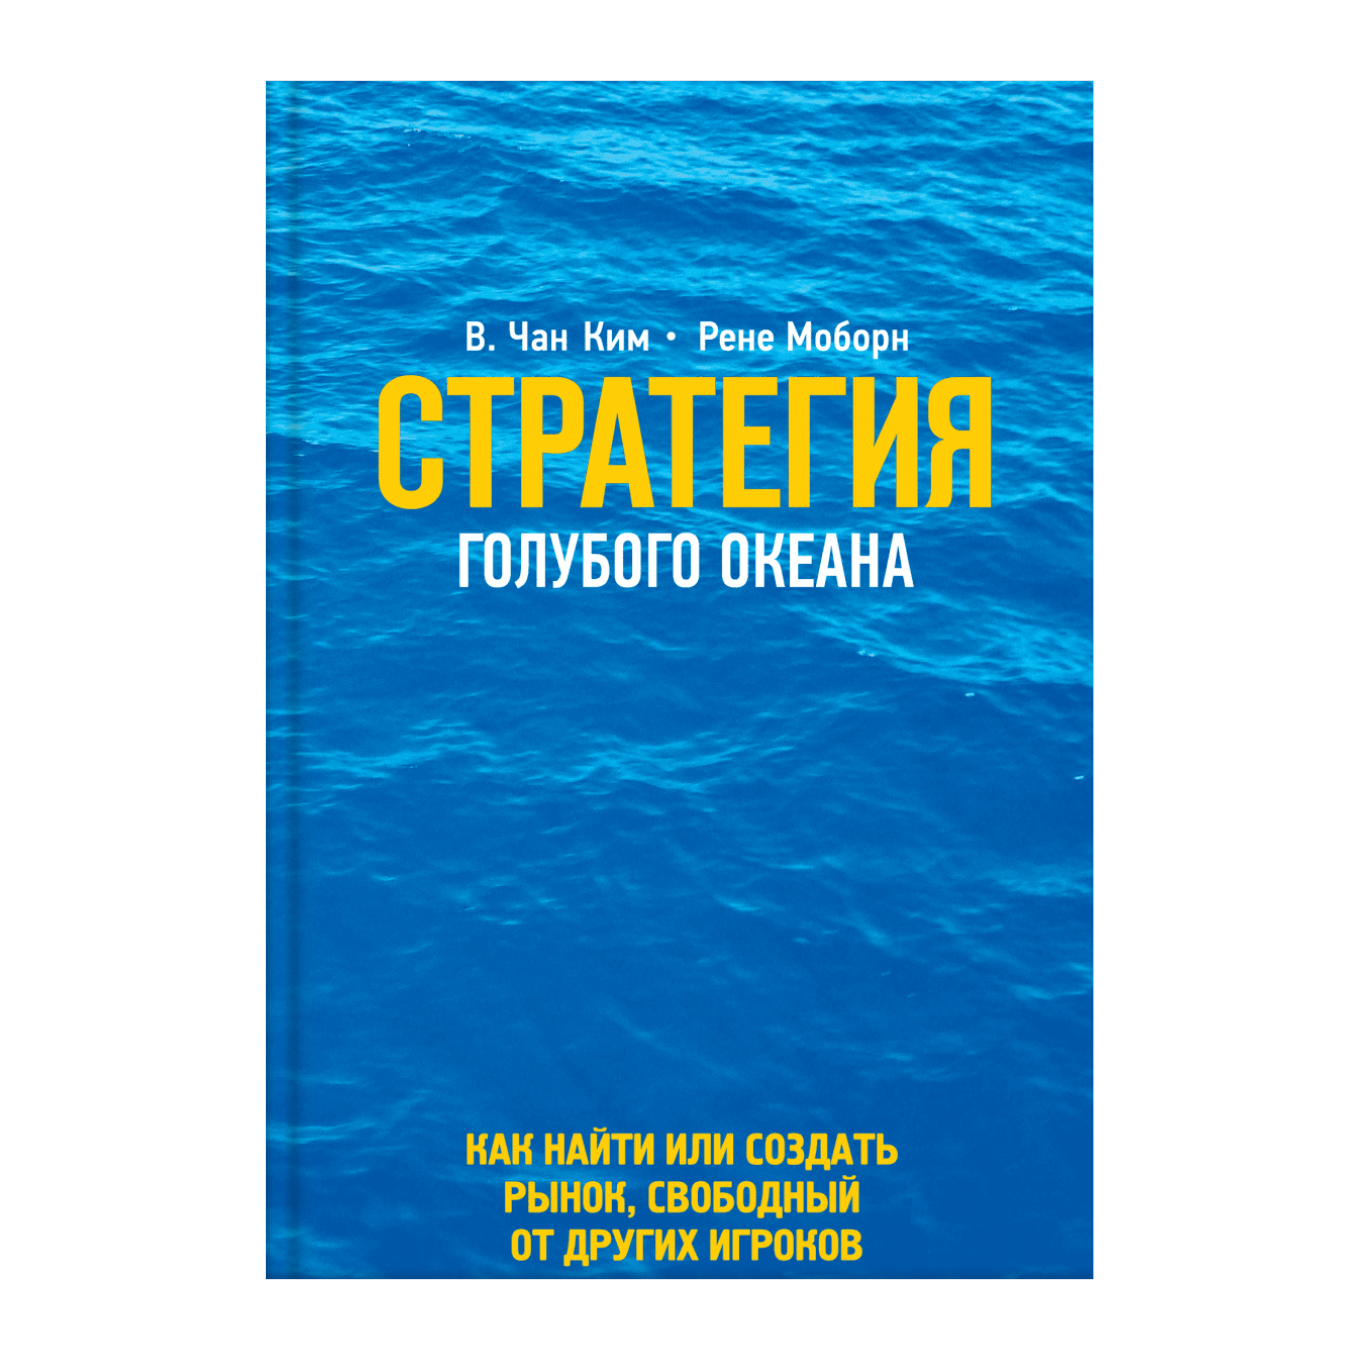 Книга Чана Кима и Рене Моборна «Стратегия голубого океана»